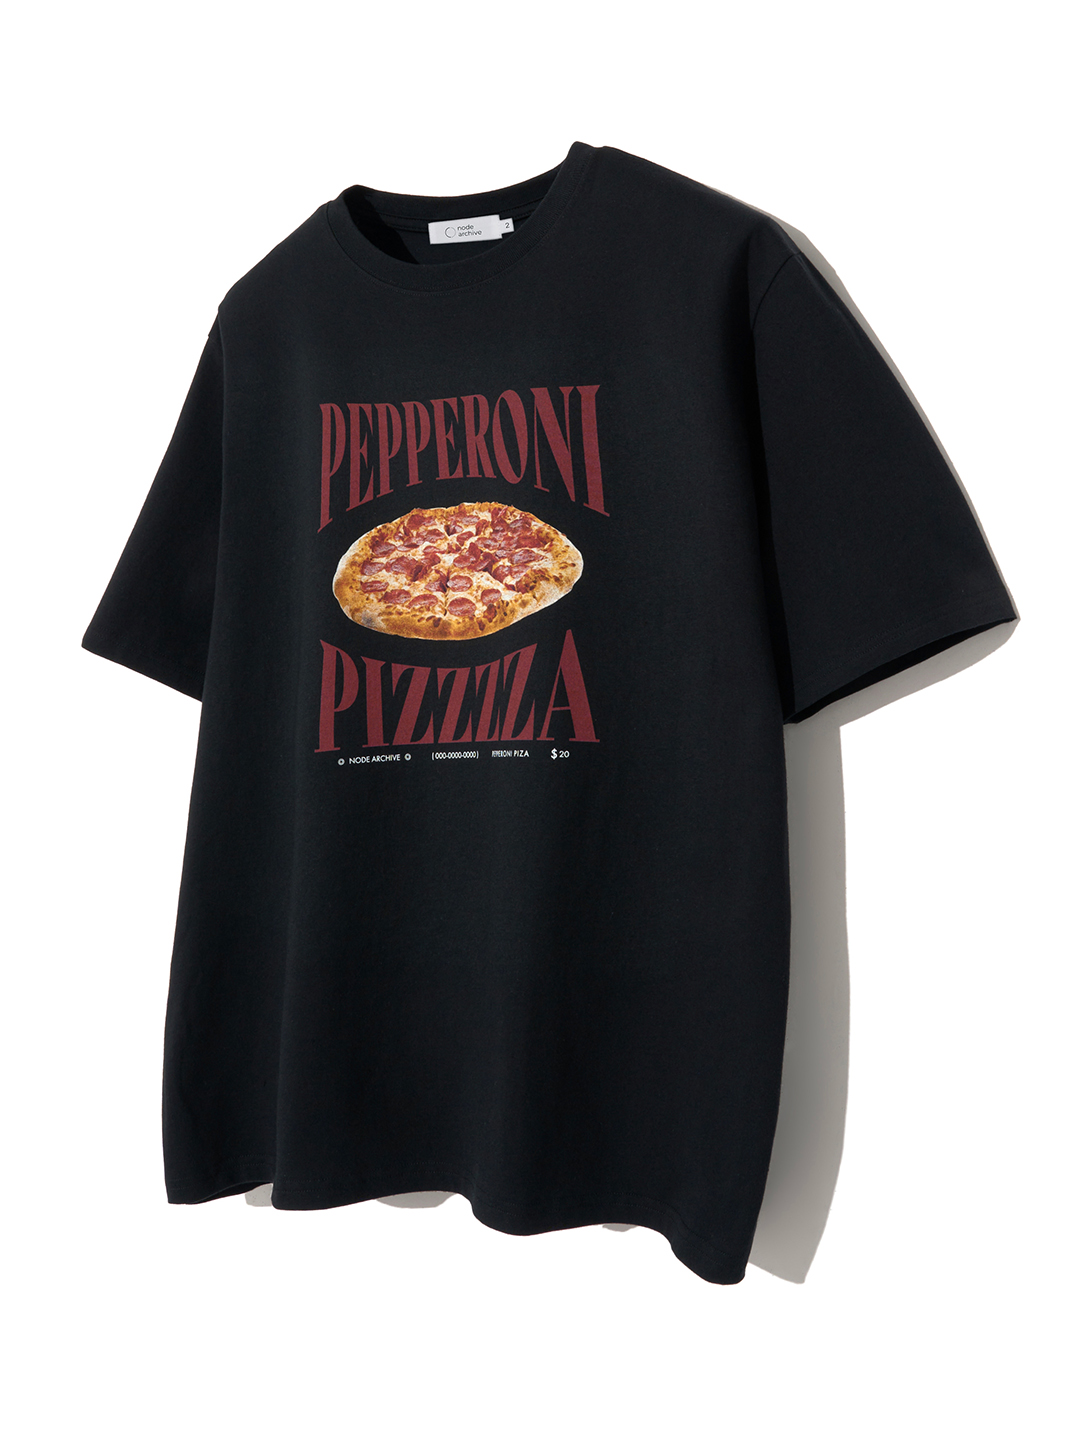 페퍼로니 피자 티셔츠 (블랙)